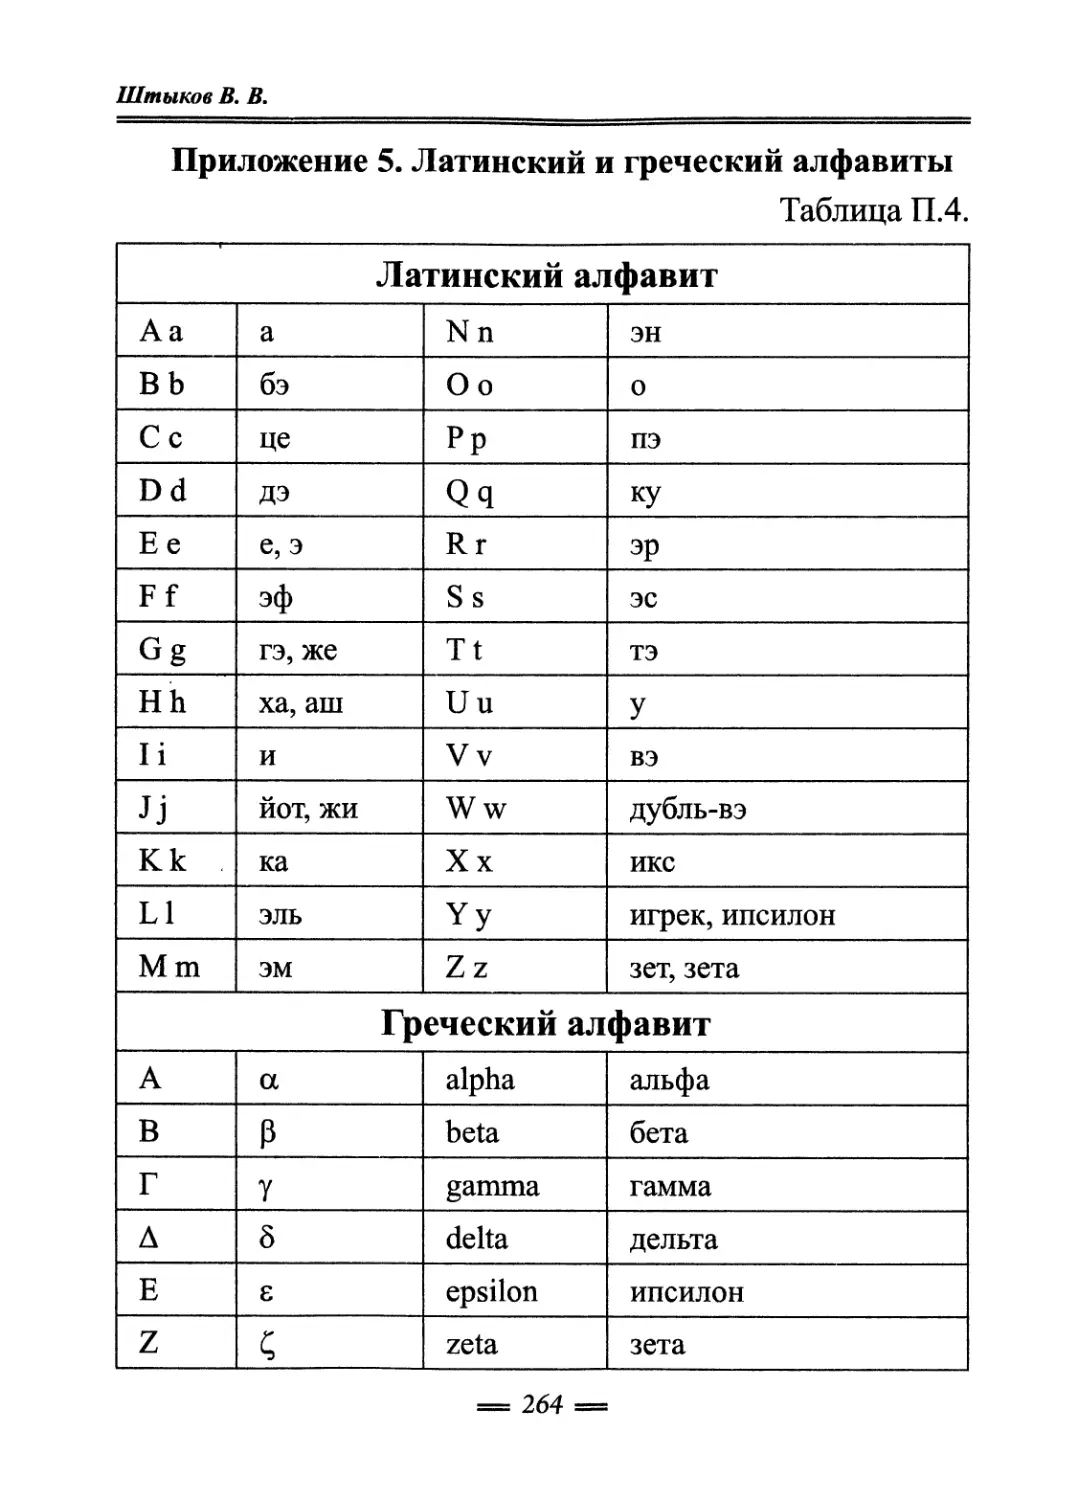 Приложение 5. Латинский и греческий алфавиты